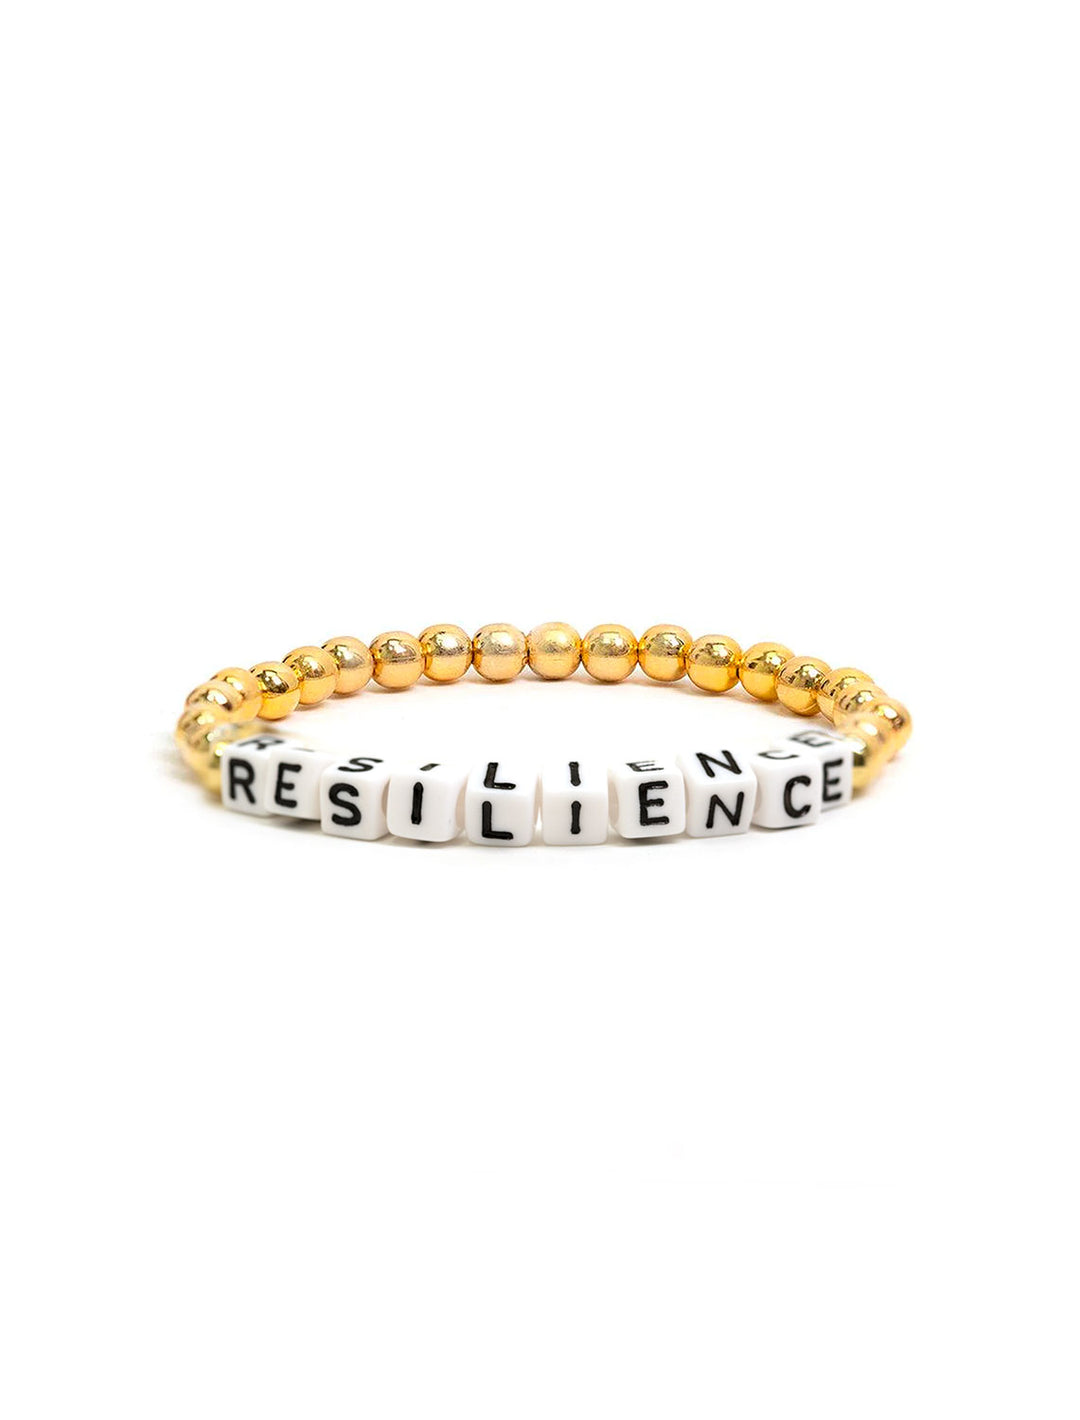 AV Max's resilience beaded bracelet.